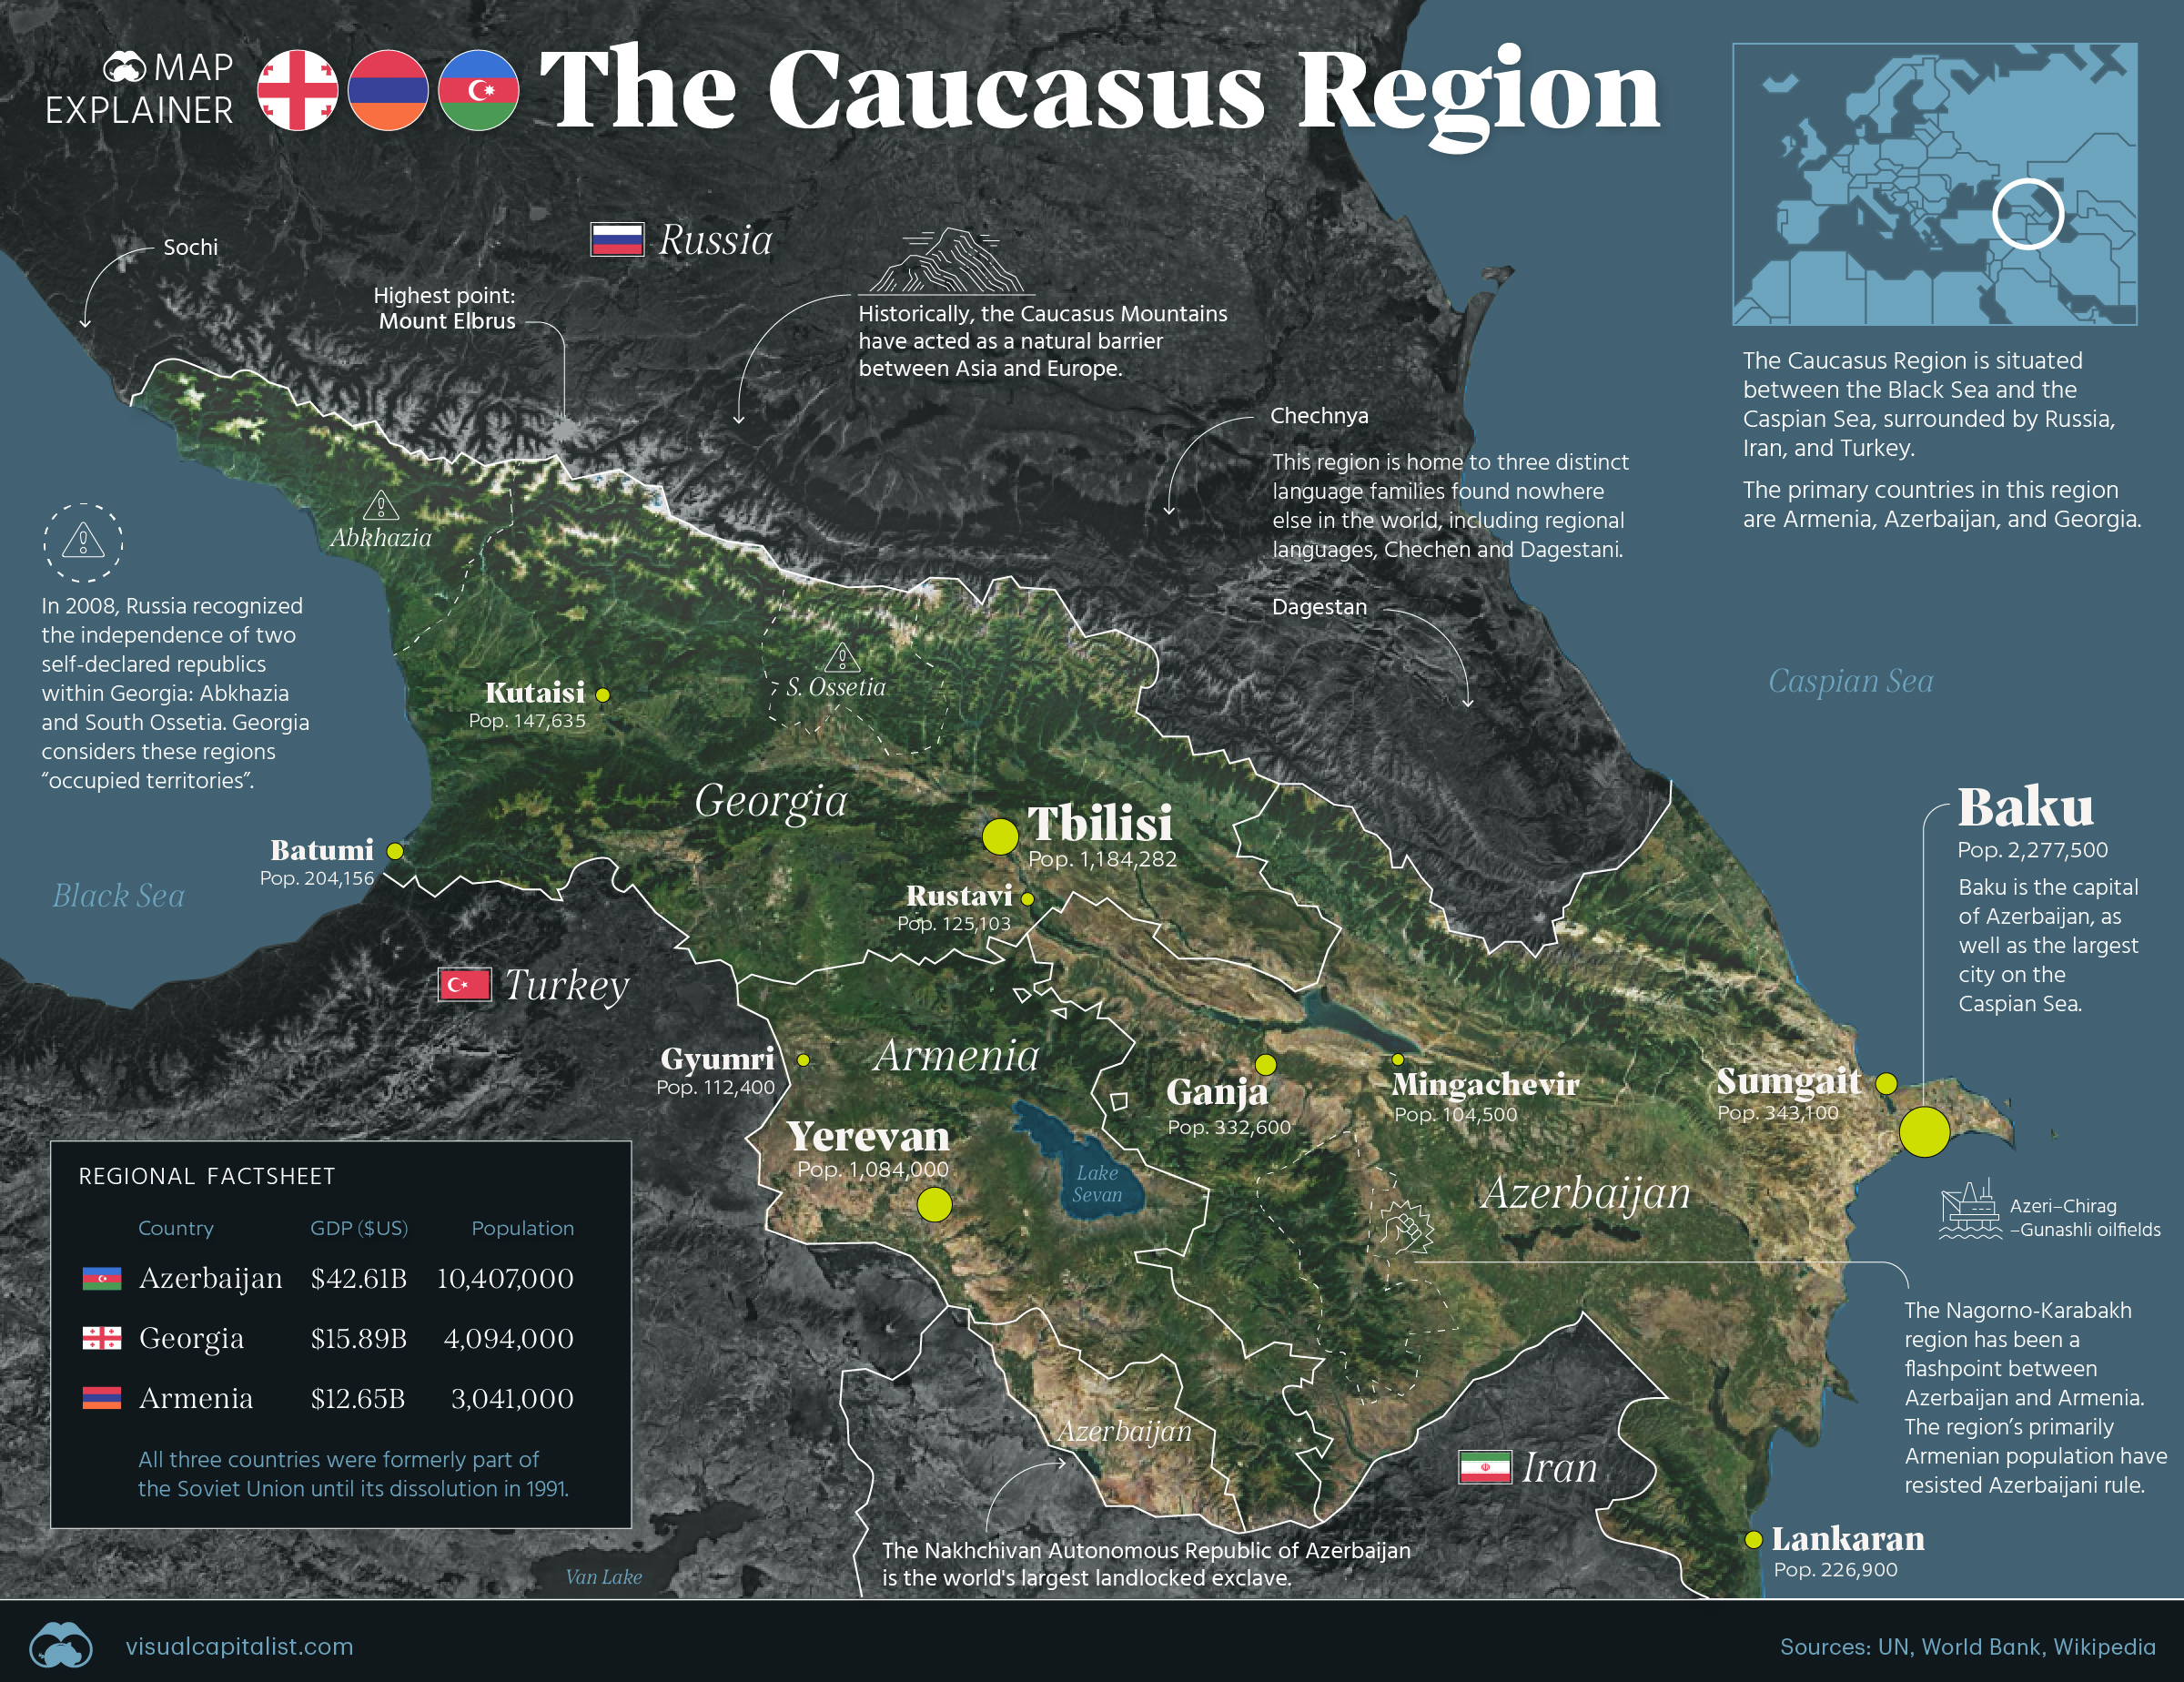 map-explainer-caucasus-region-5719188